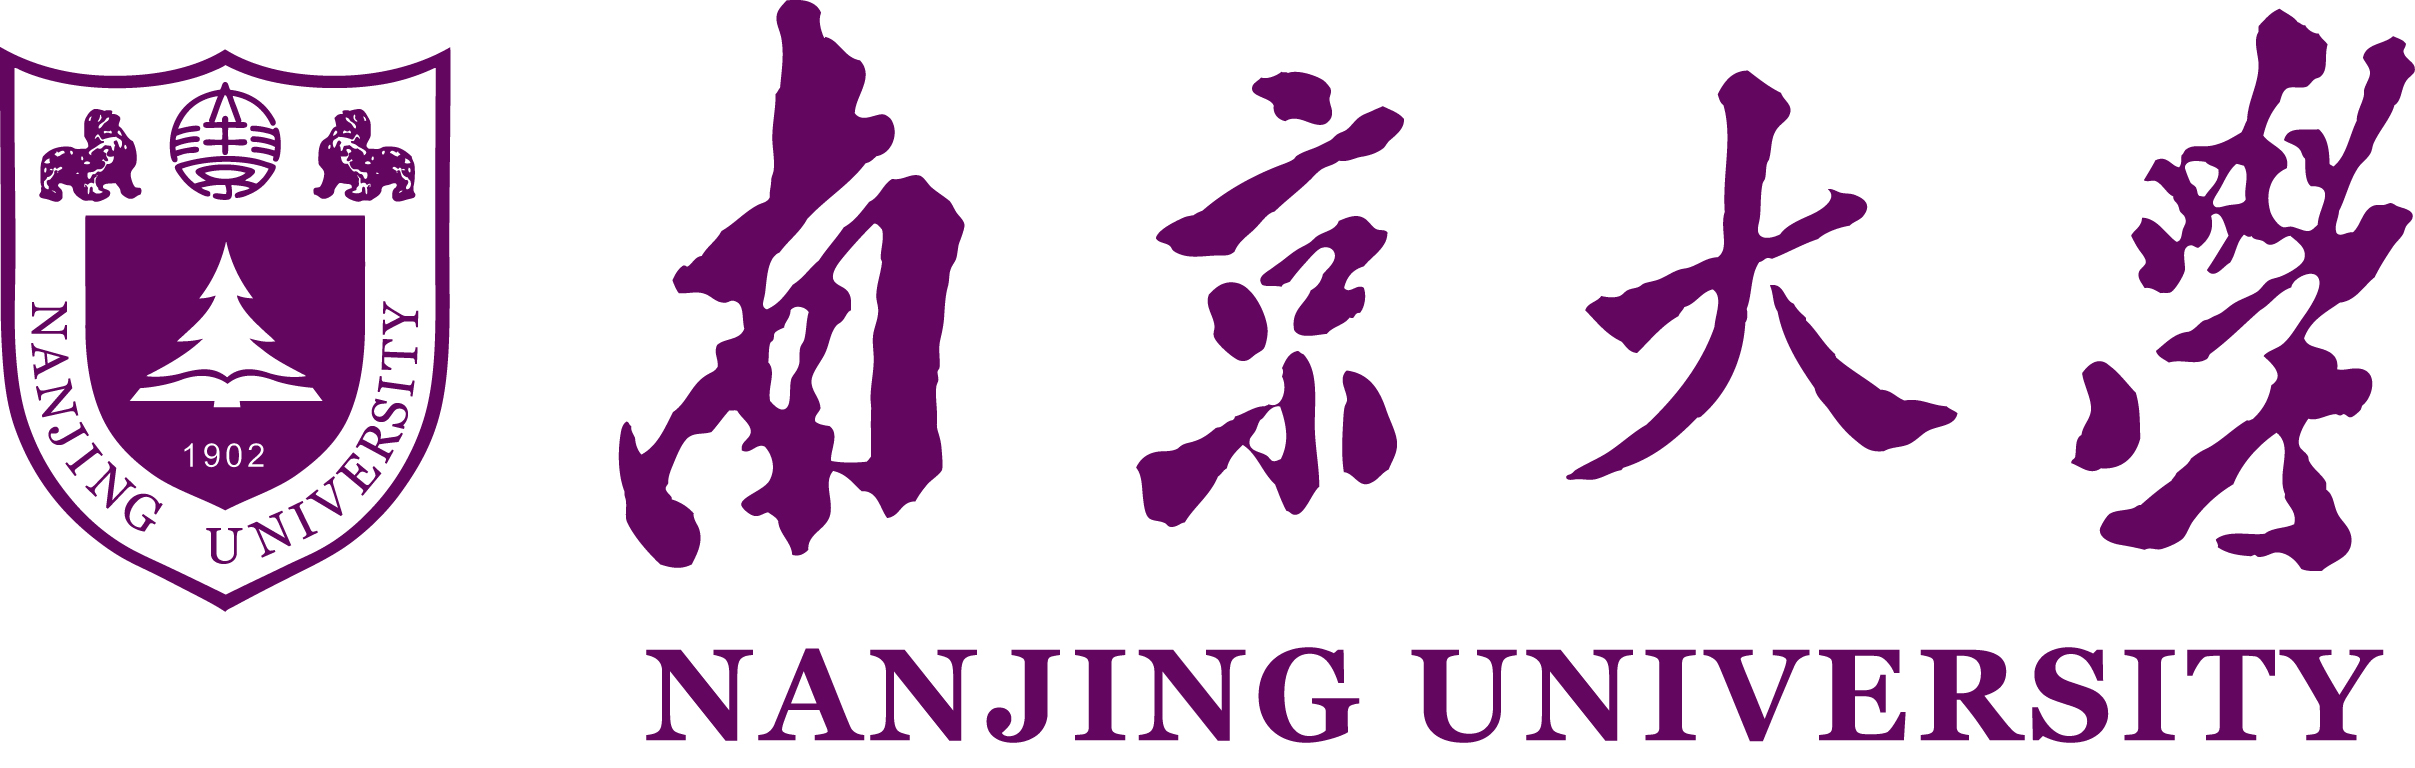 มหาวิทยาลัยหนานจิง | ศึกษาต่อต่างประเทศ